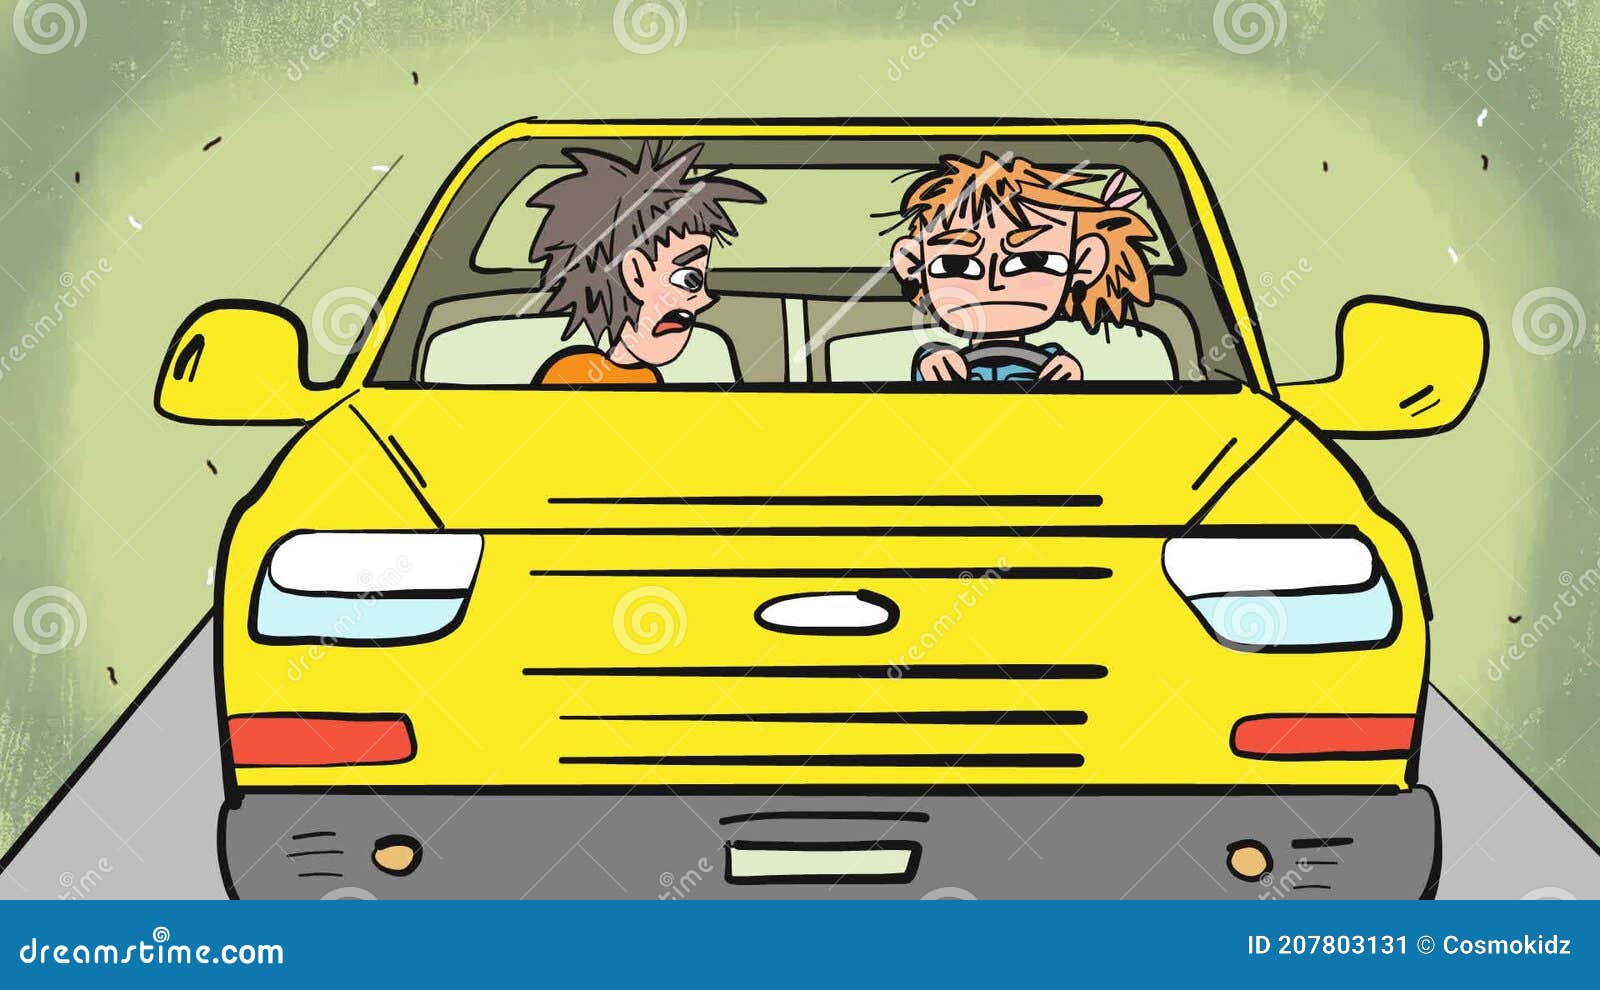 Car quarrel comic